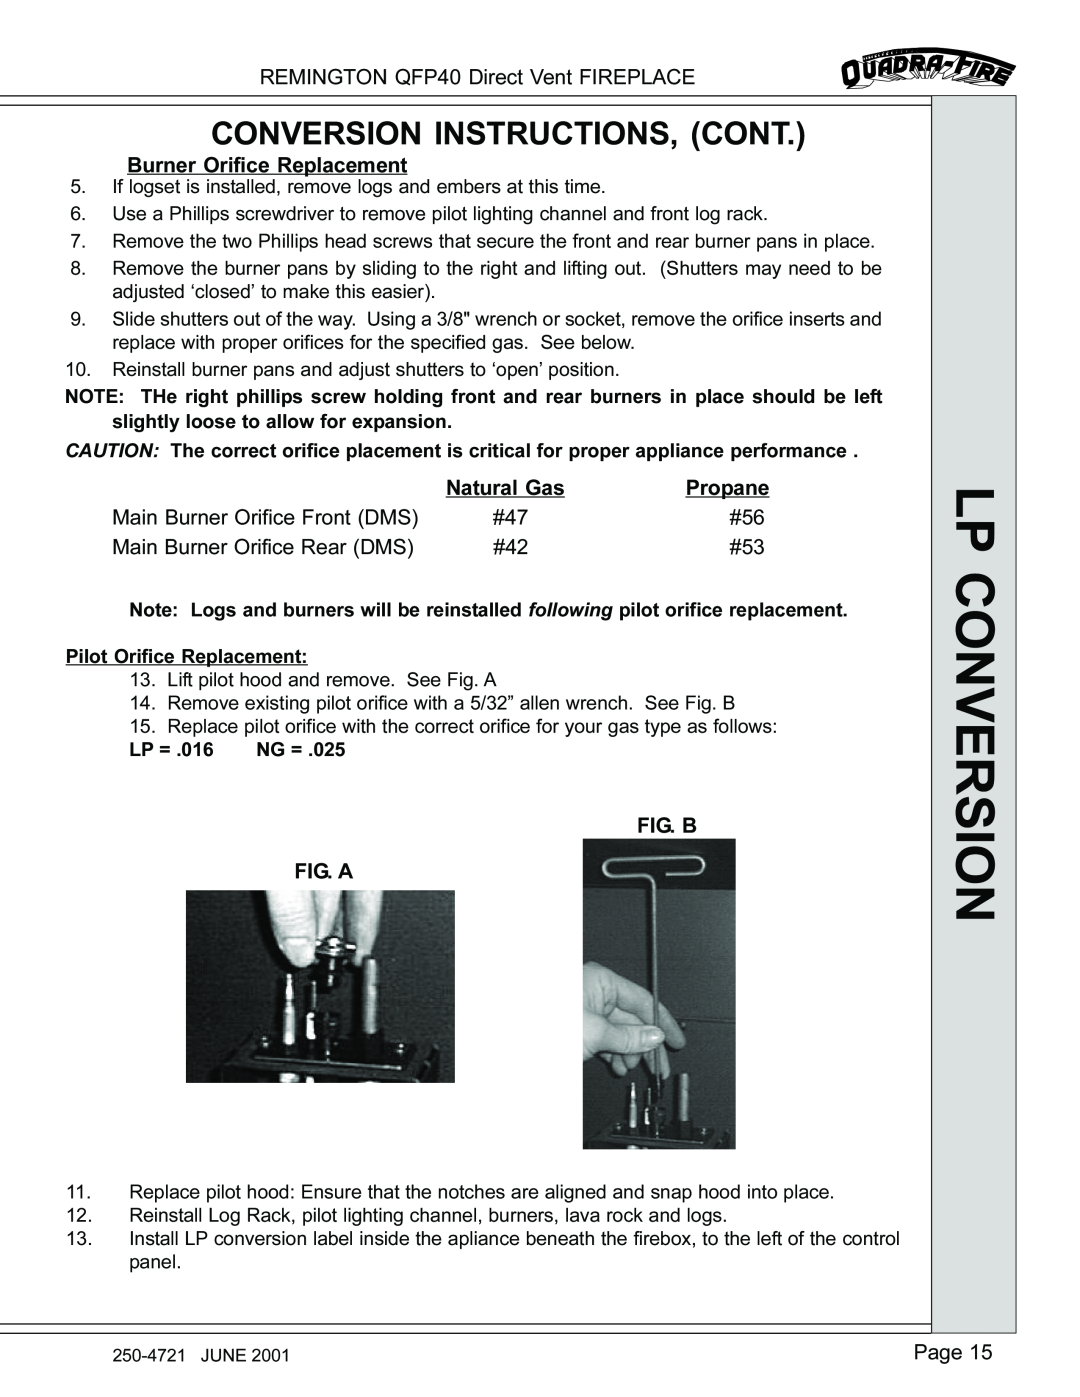 Remington QFP40 manual Conversion Instructions, Cont, Lp Conversion 